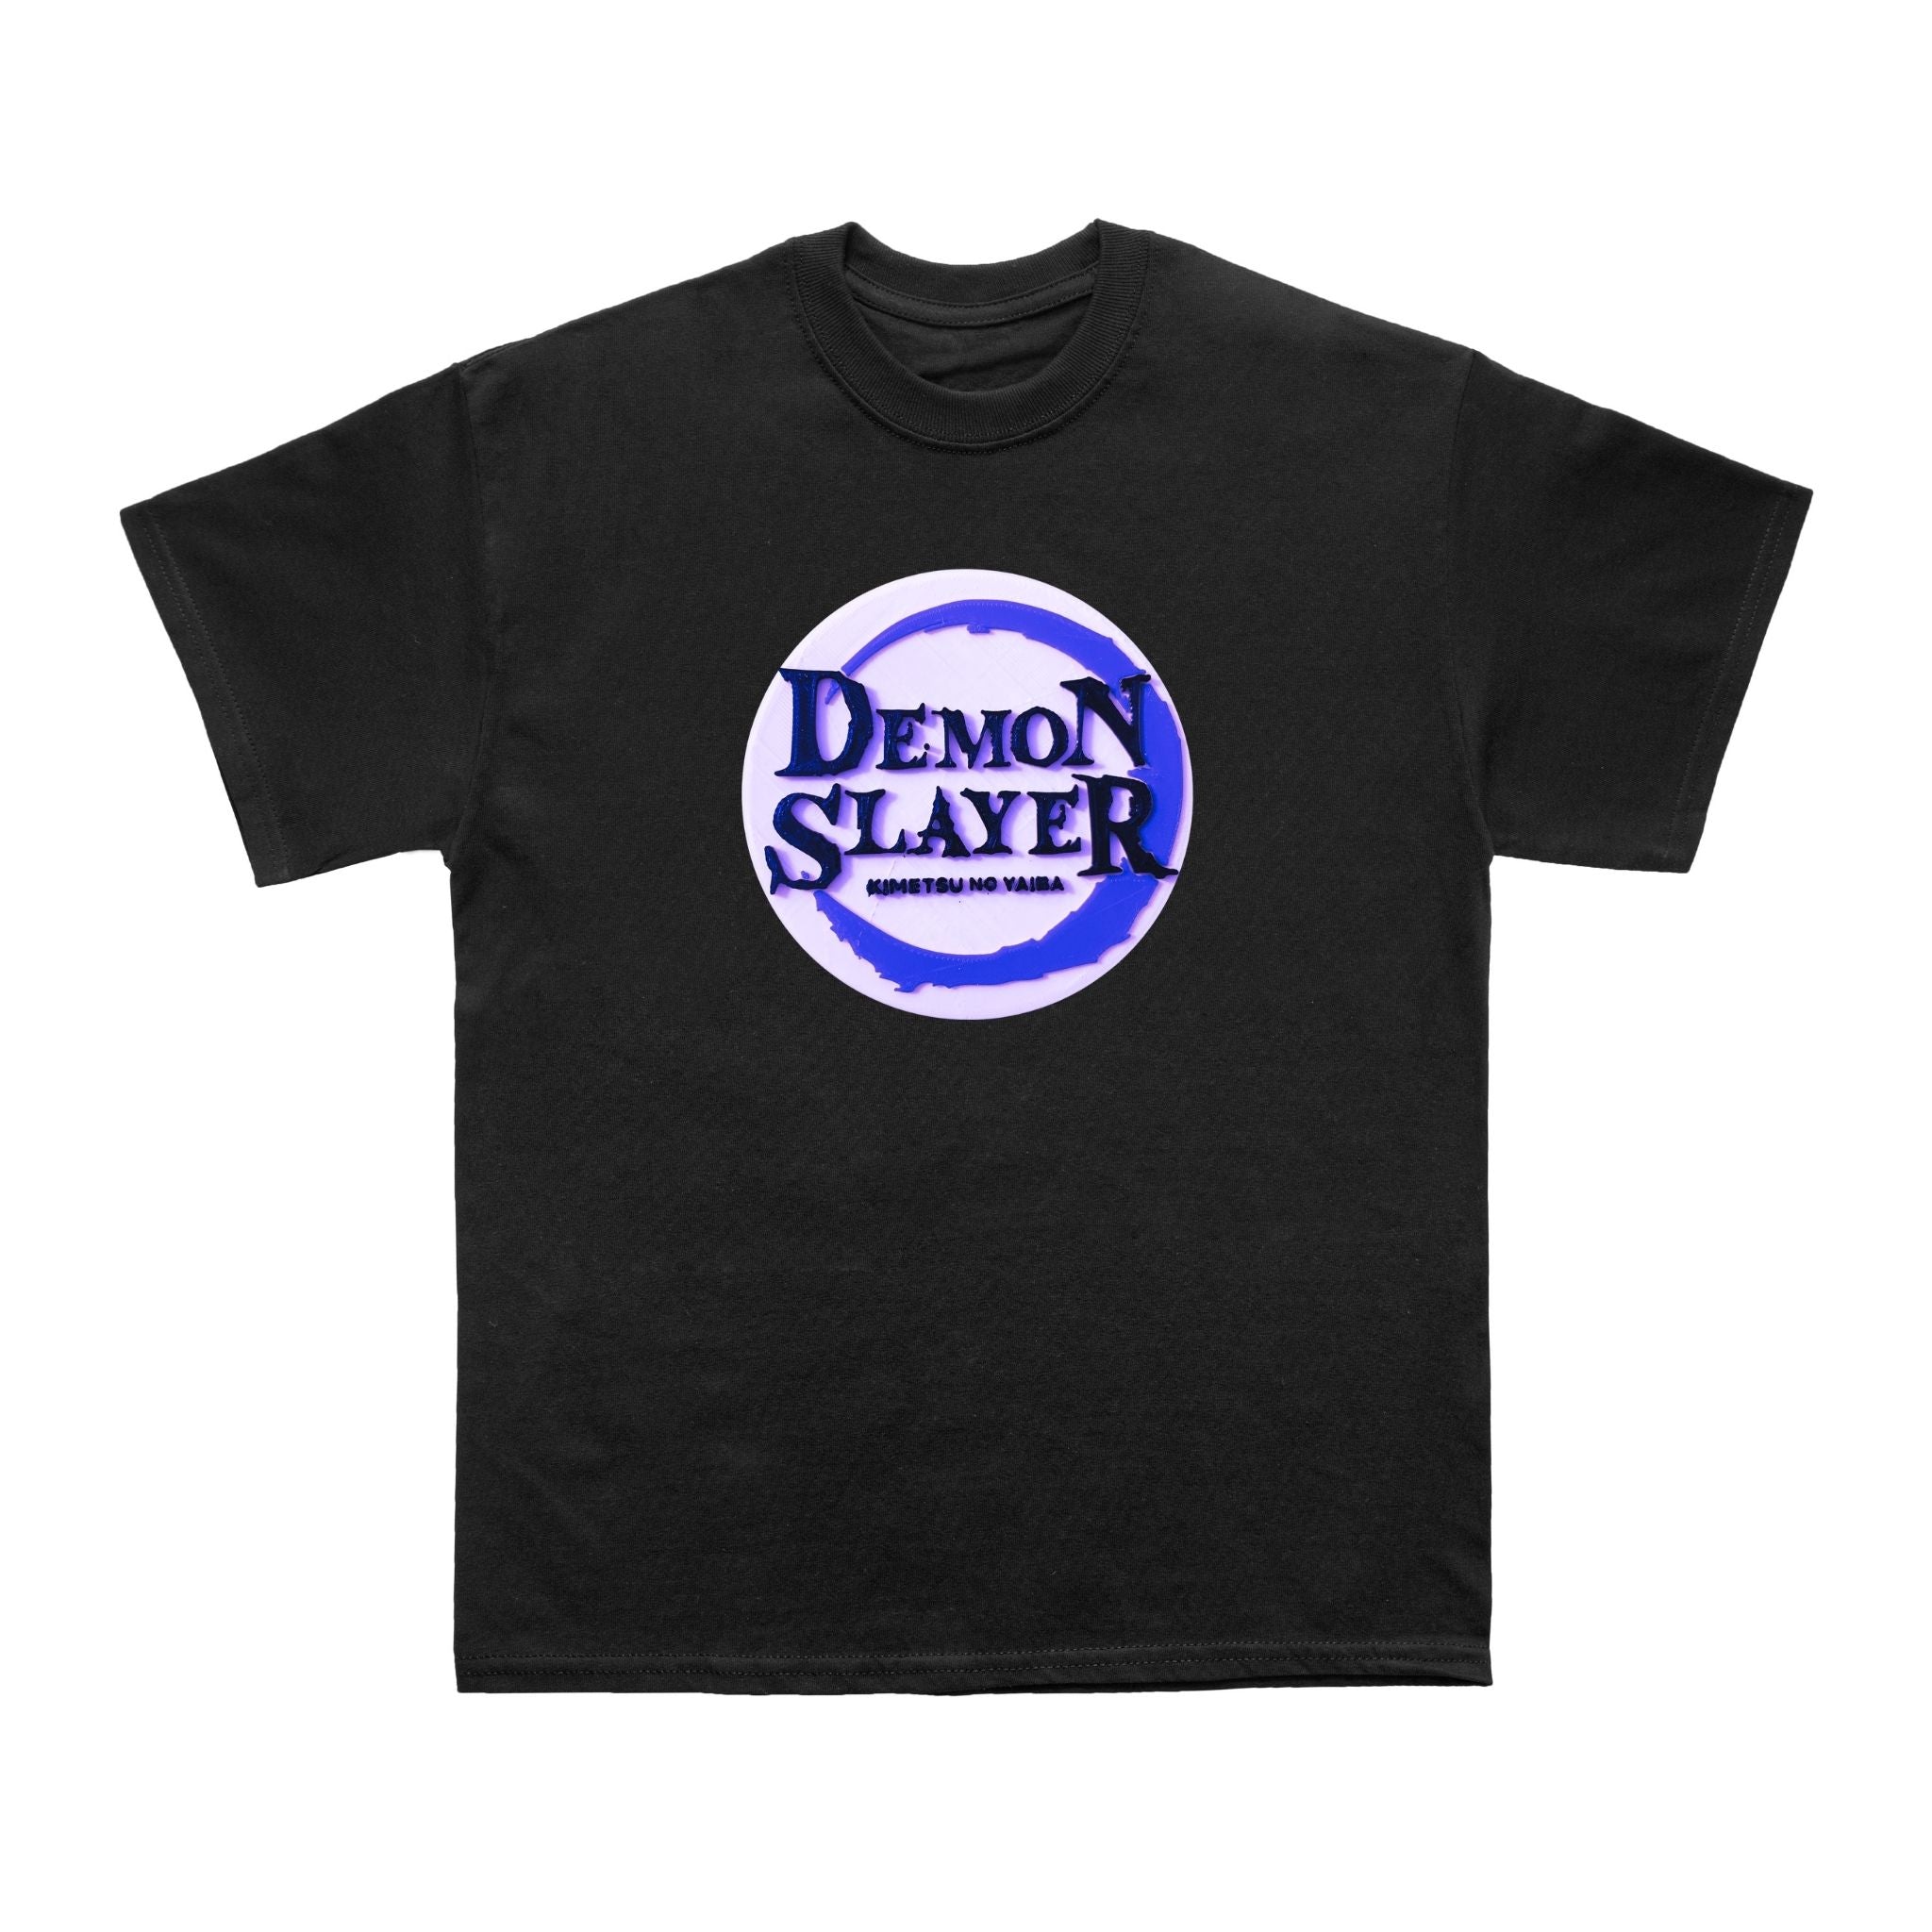 Demon Slayer Blue Anime Inspired T shirt